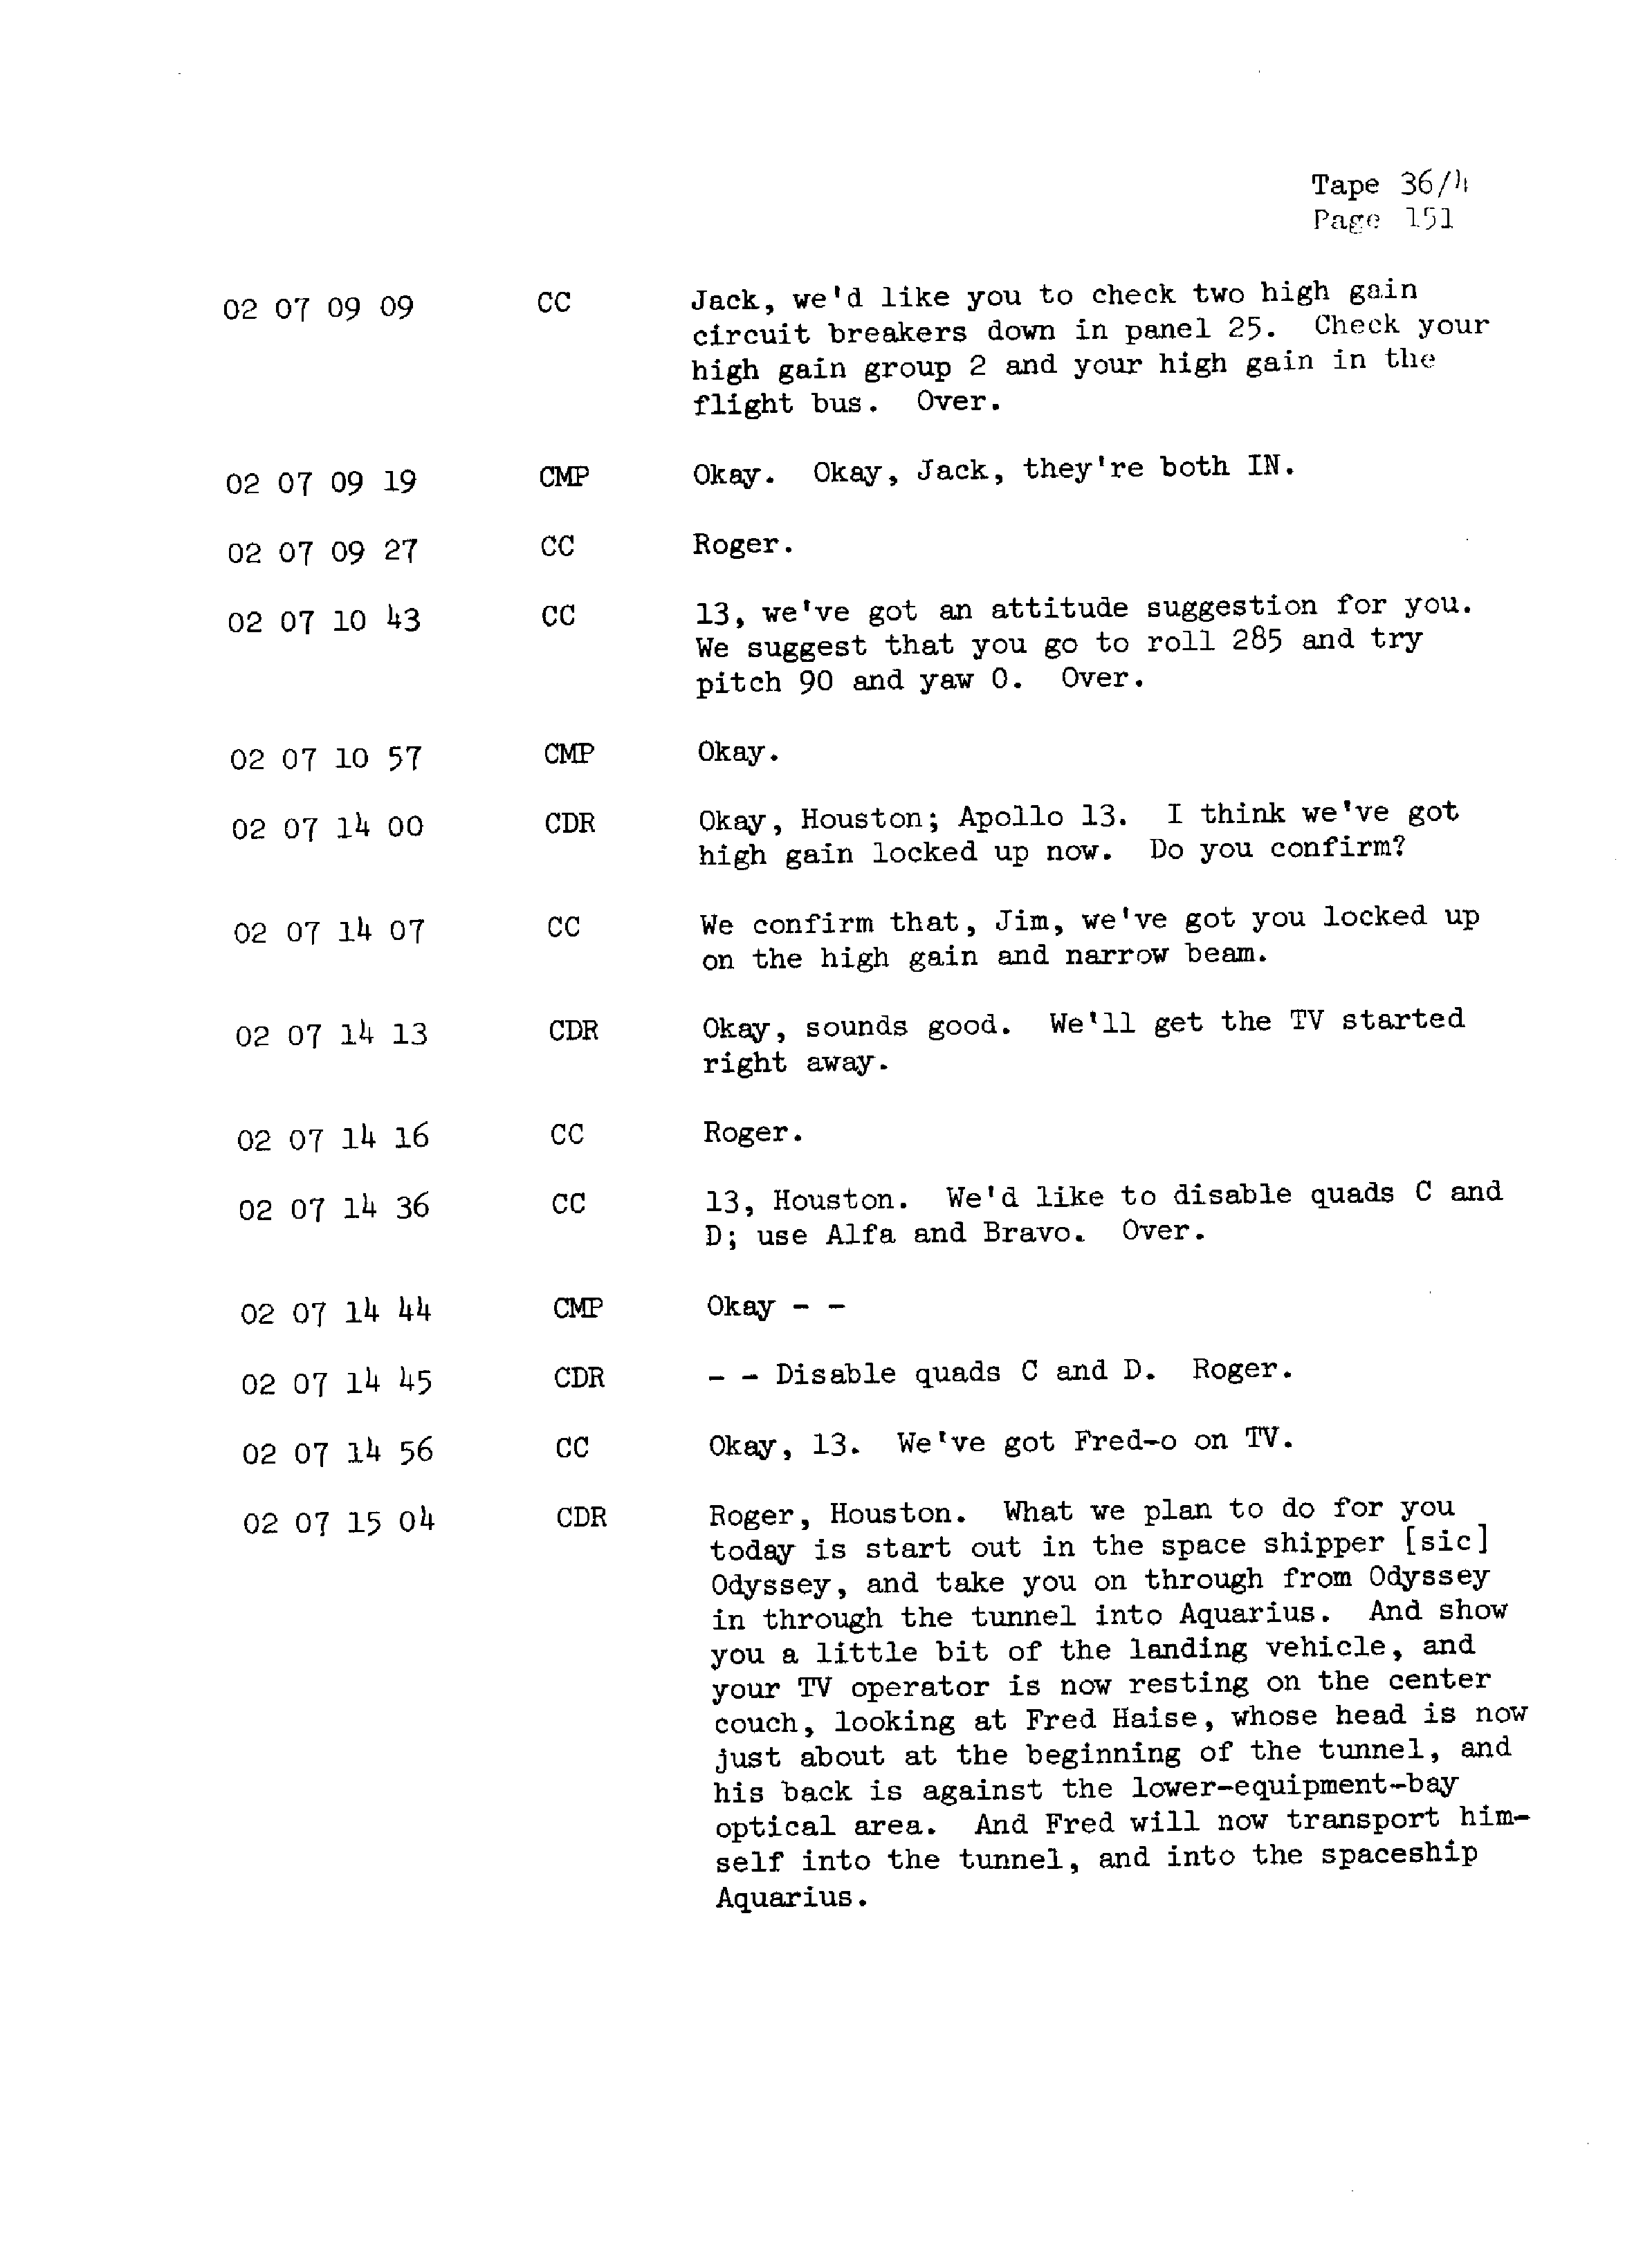 Page 158 of Apollo 13’s original transcript